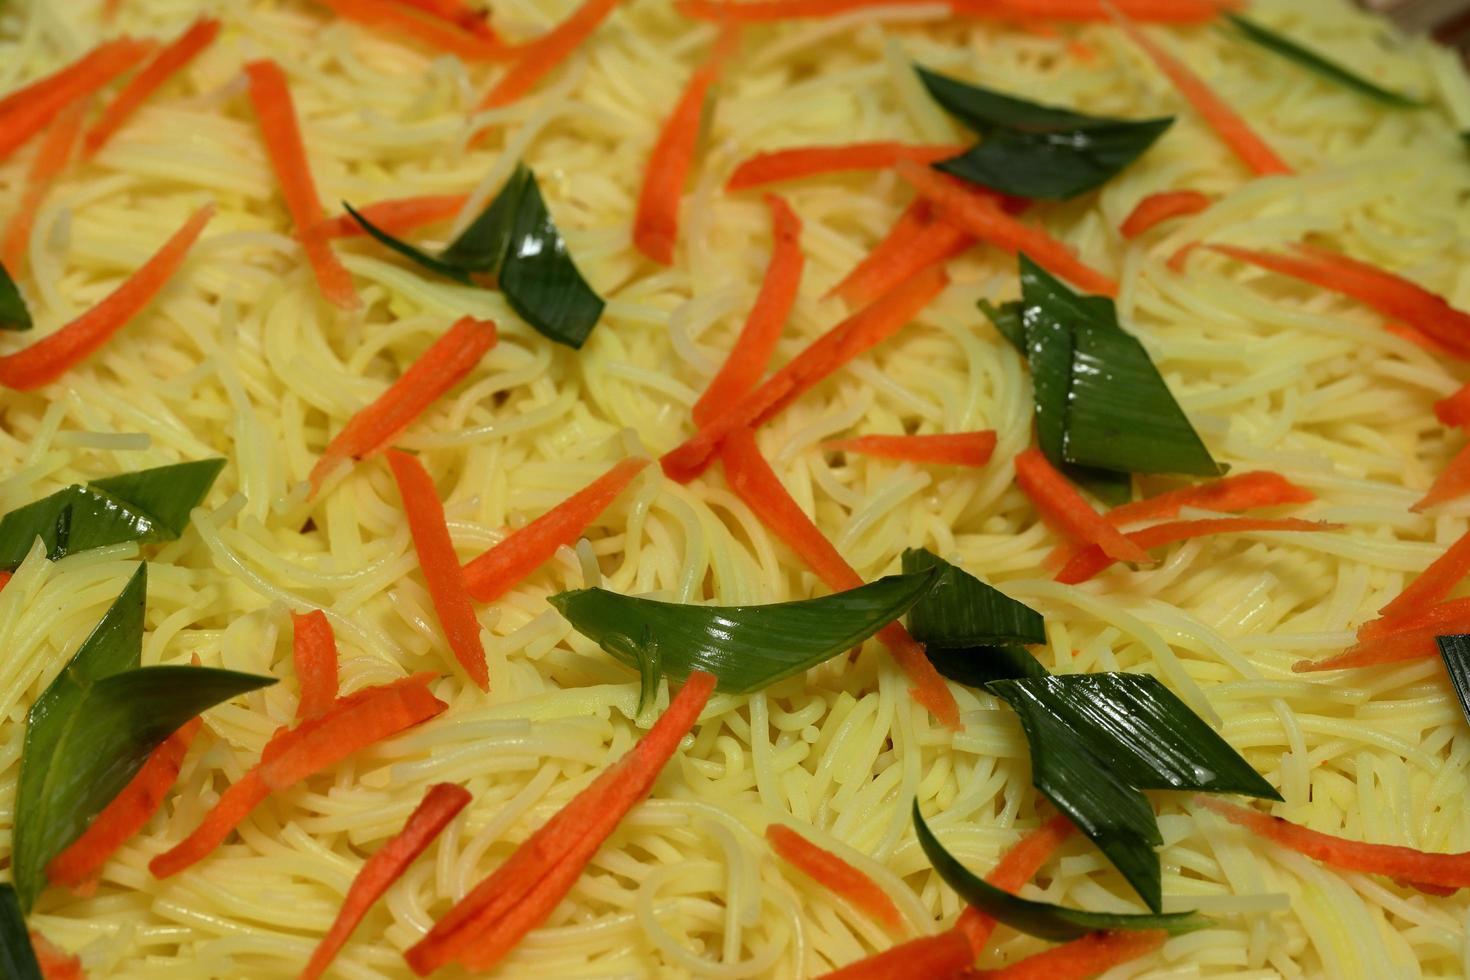 sencillo pollo perro chino mein comida en un blanco plato y en un de madera mesa. chino orzuelo sabroso noodelos con salsa y verduras foto